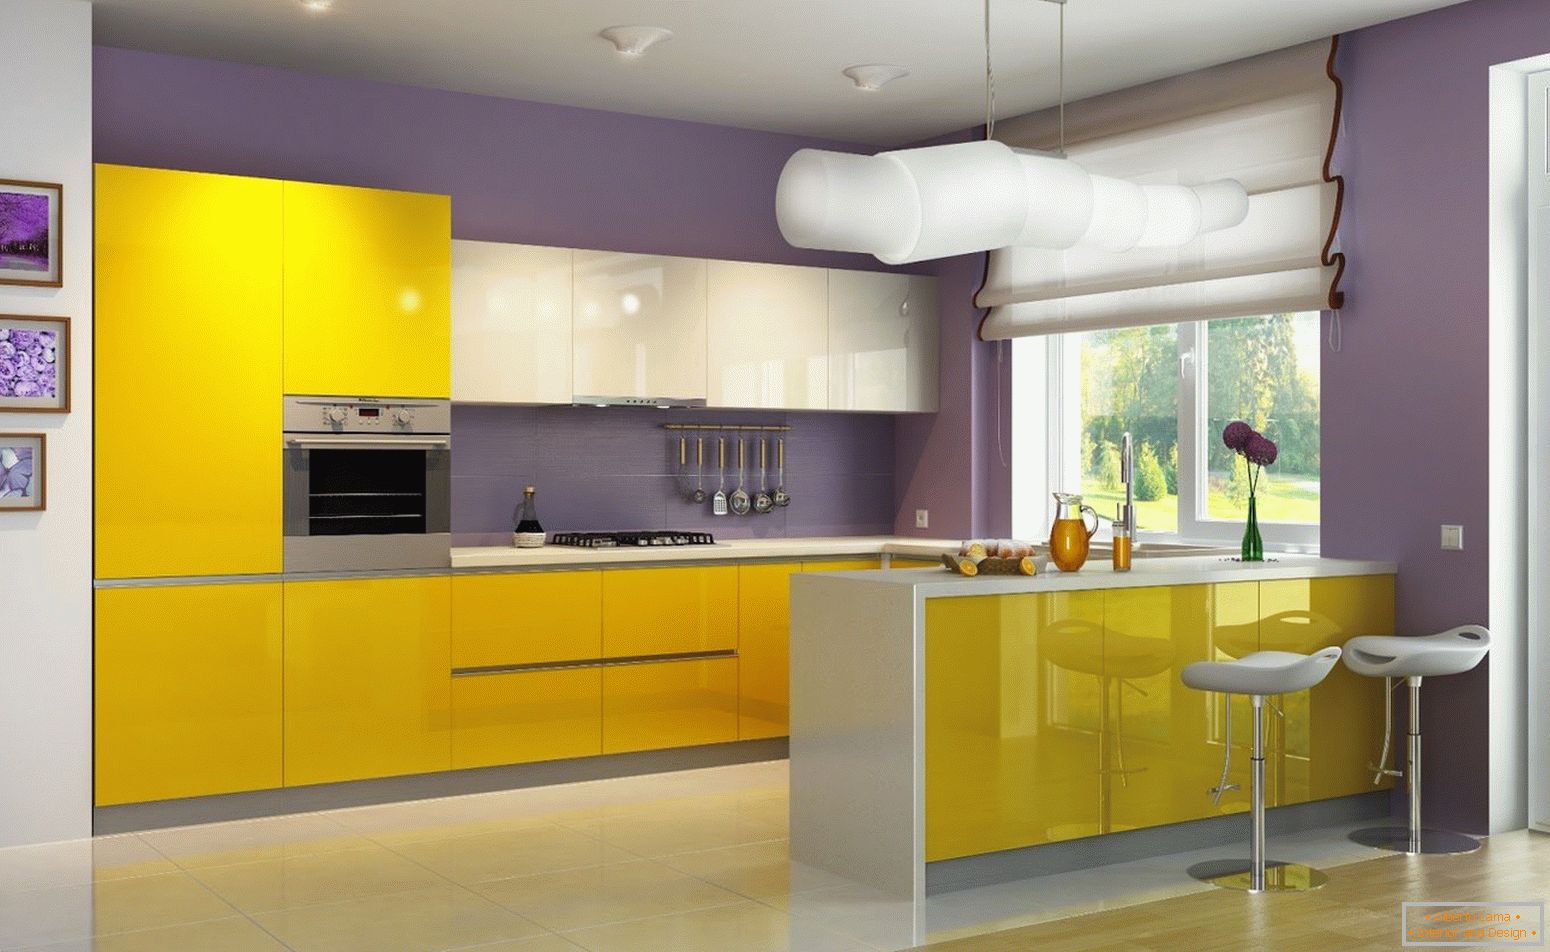 La combinaison de fleurs jaunes et violettes dans la cuisine